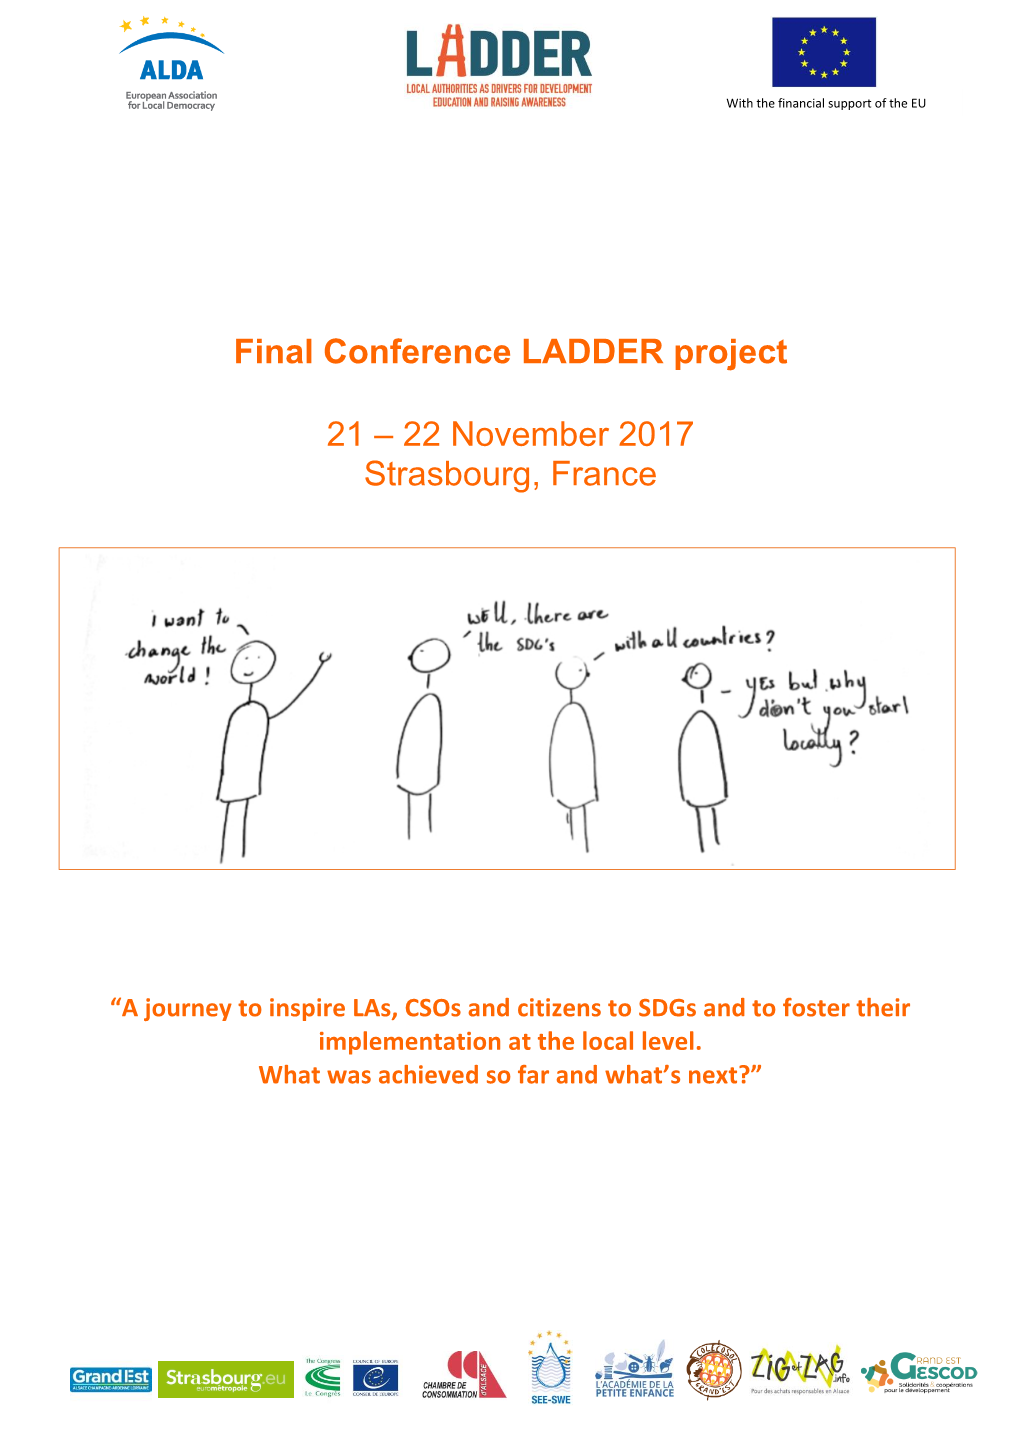 Final Conference LADDER Project 21 – 22 November 2017 Strasbourg